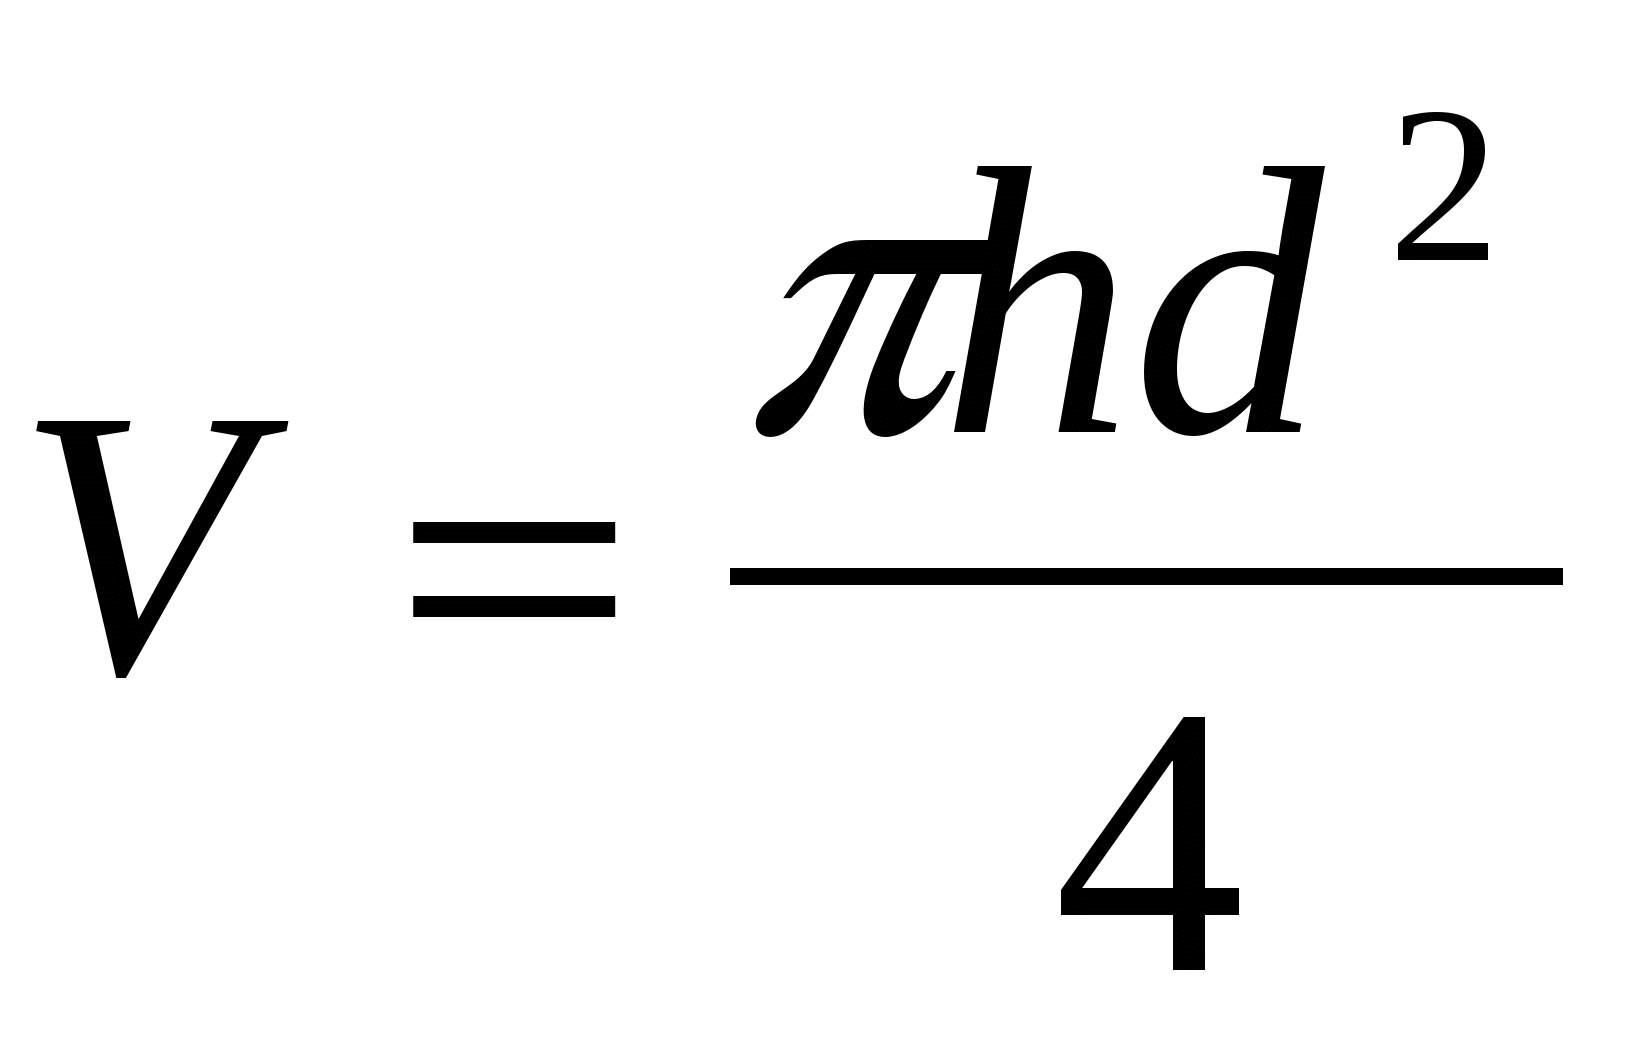 Объем цилиндра равен формула. Объём циллиндра формула. Формула объёма цилиндра через диаметр. Формула объёма цилиндра через диаметр формула. Диаметр цилиндра формула.